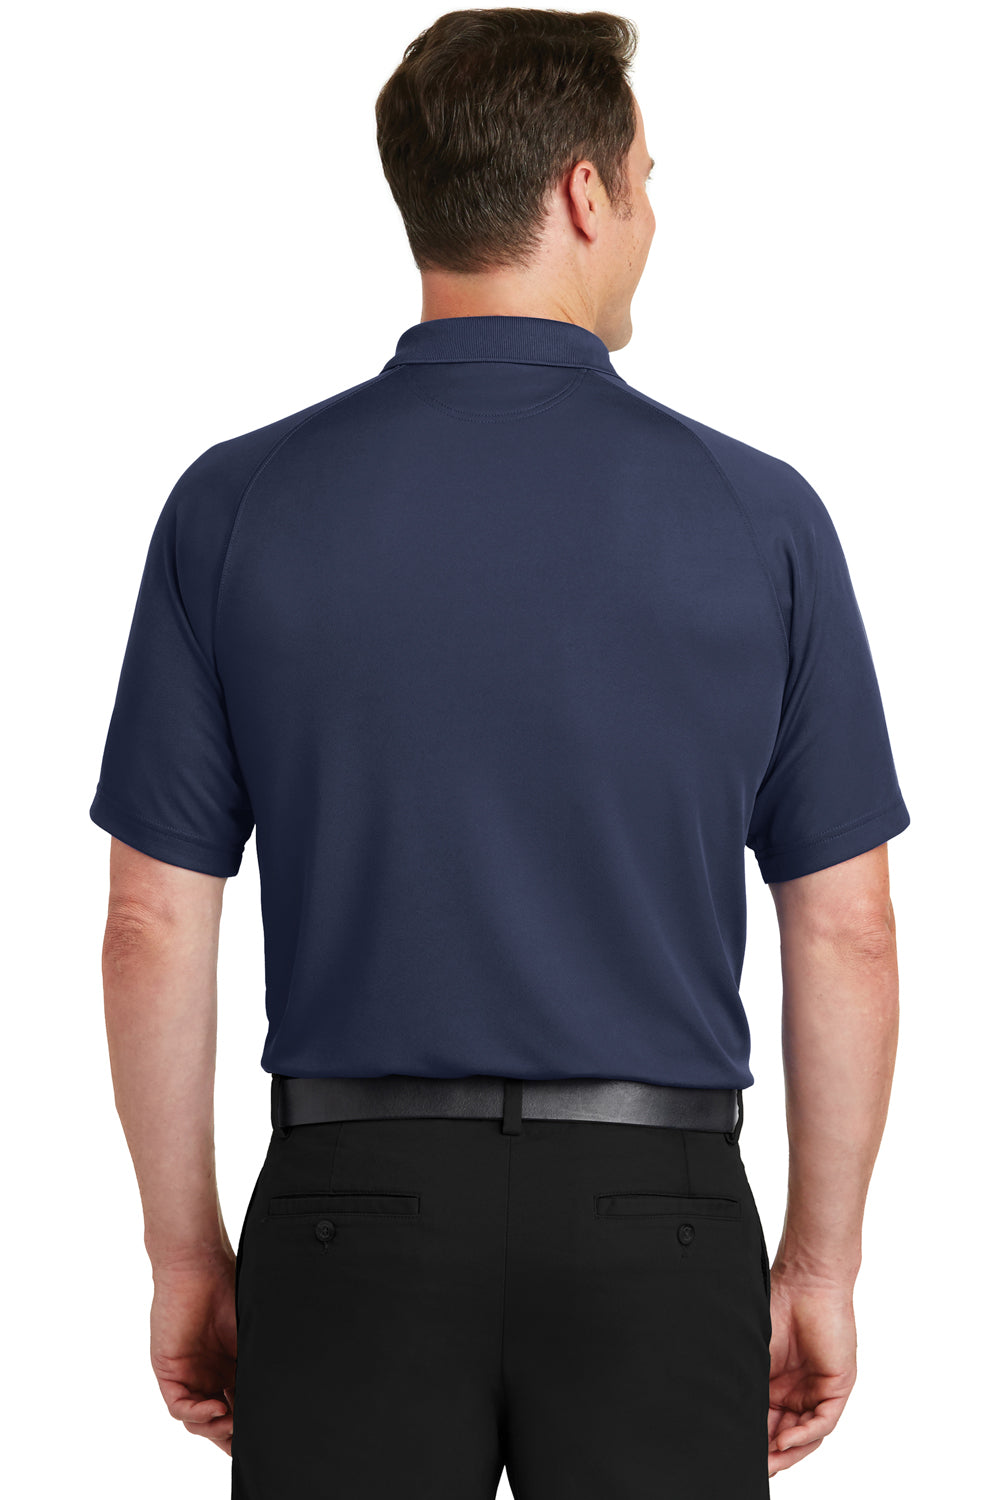 Sport-Tek T475 Mens Dry Zone Moisture Wicking Short Sleeve Polo Shirt Navy Blue Back